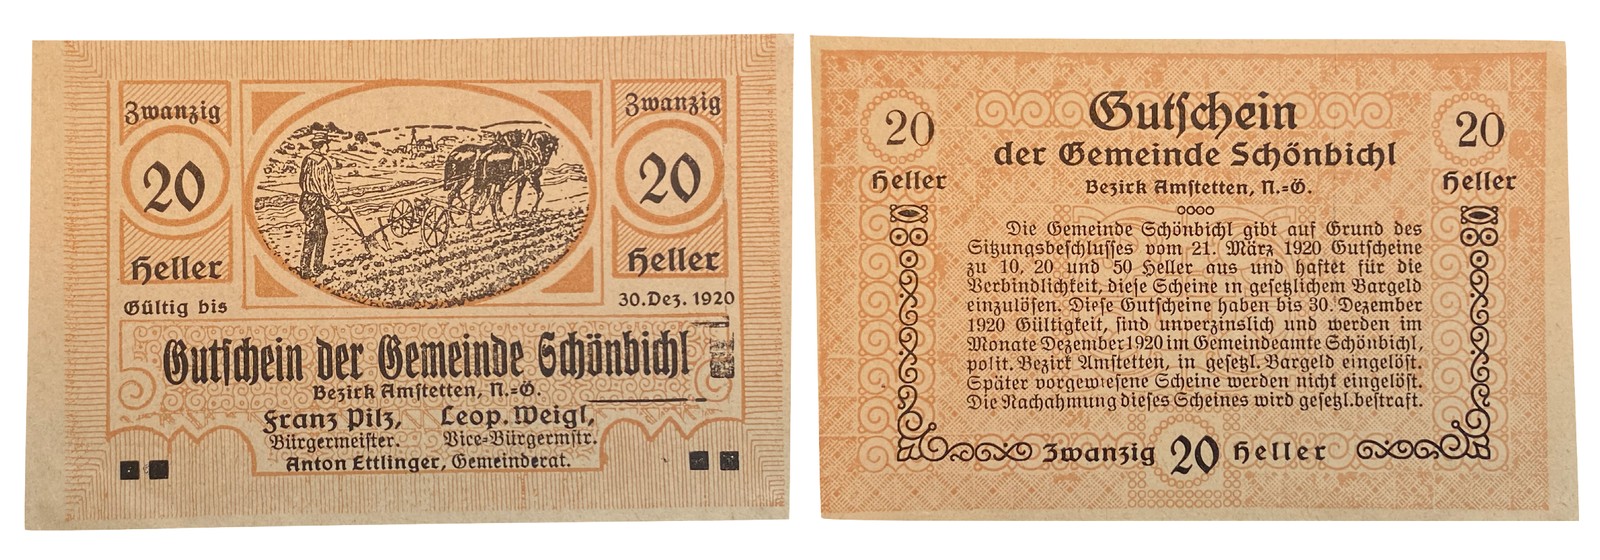 20 heller Schönbichl